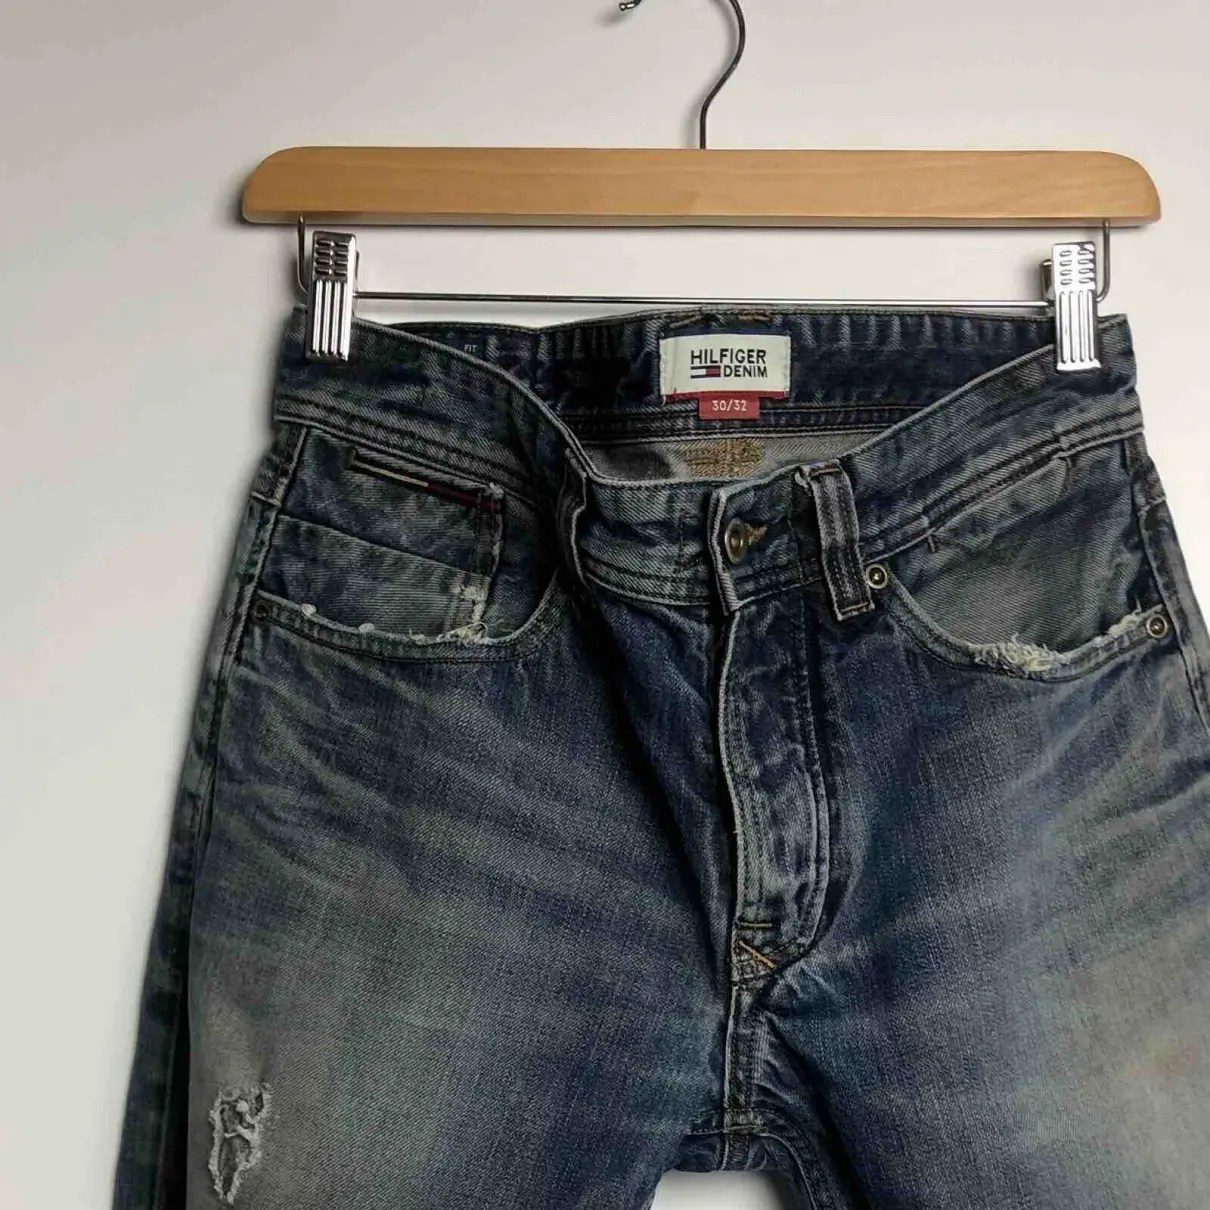 Luxury Tommy Hilfiger Jeans Women